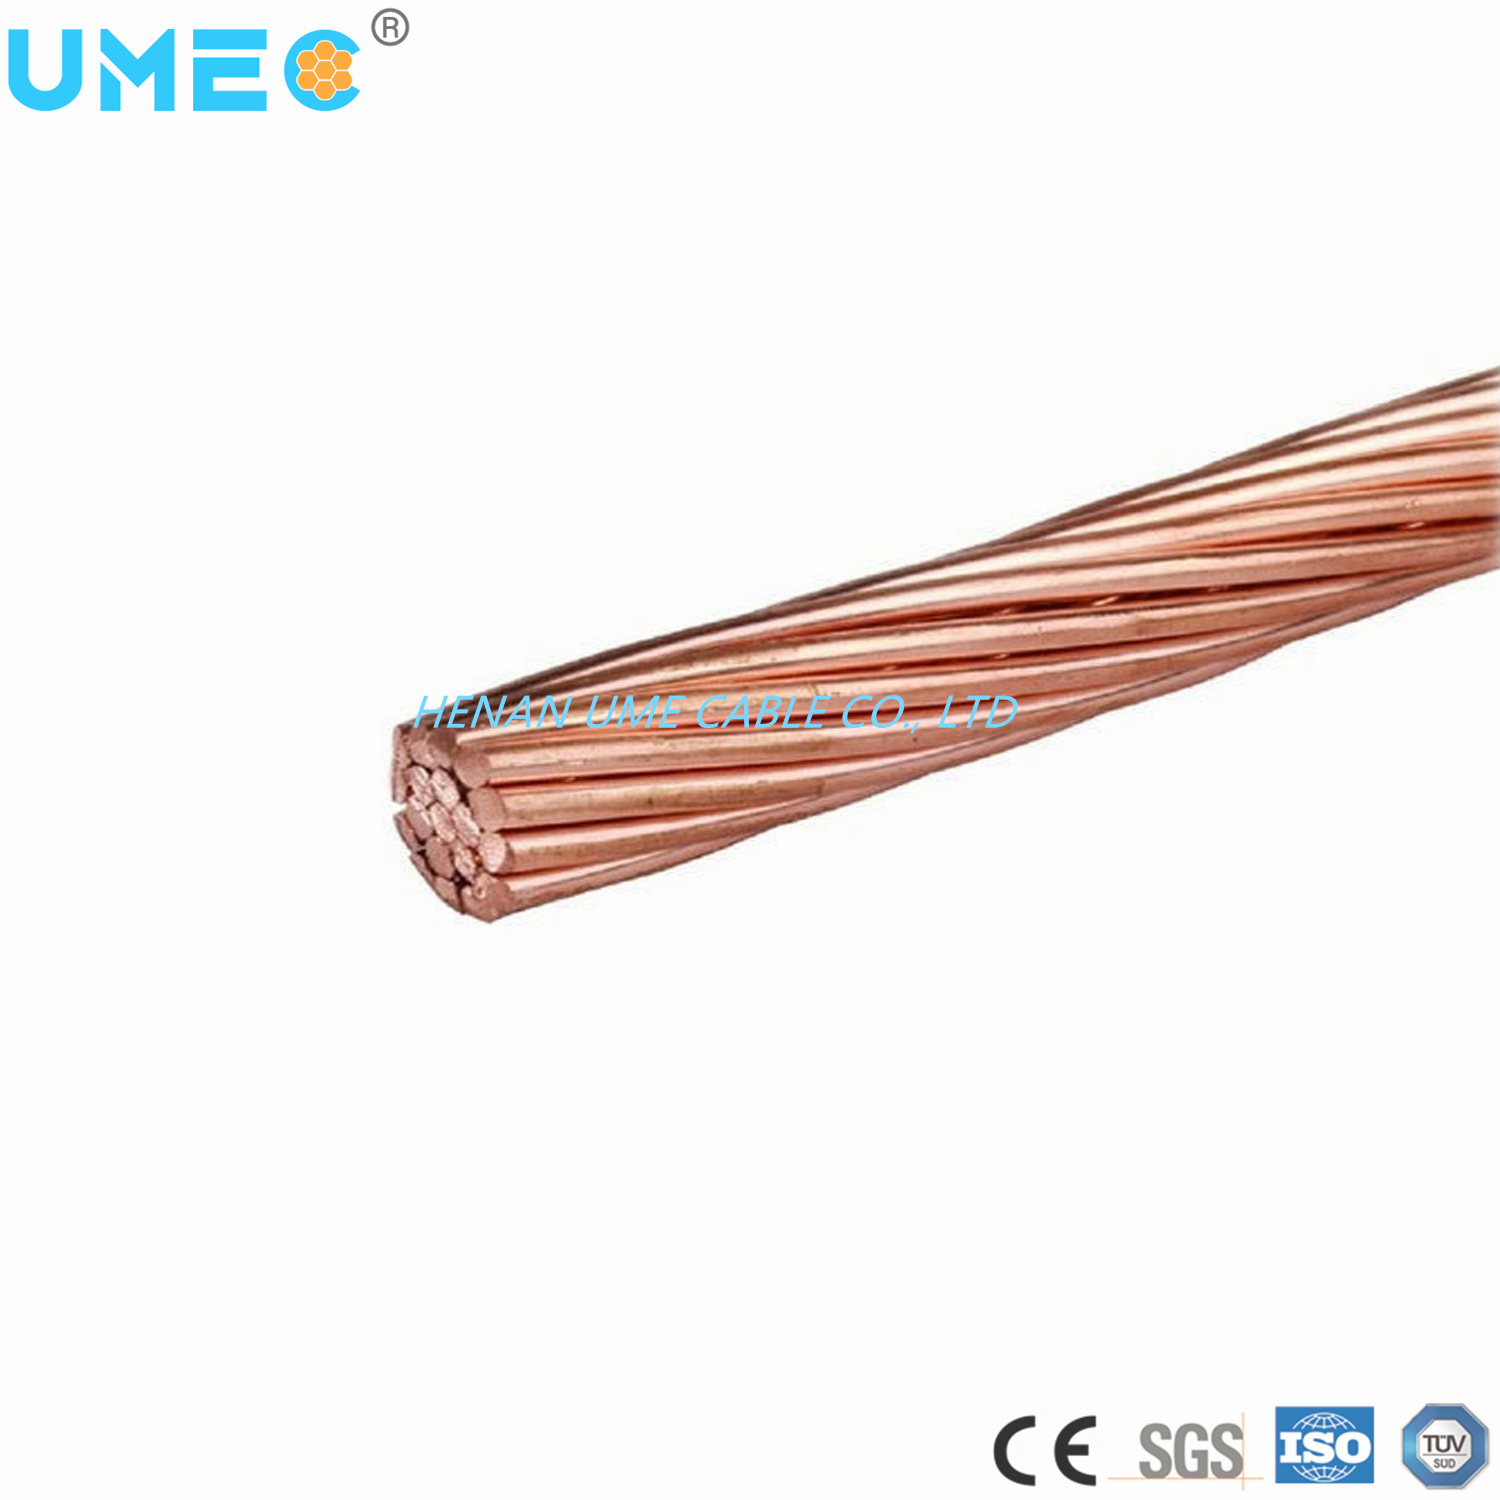 Bare Copper Hard Drawn Cable